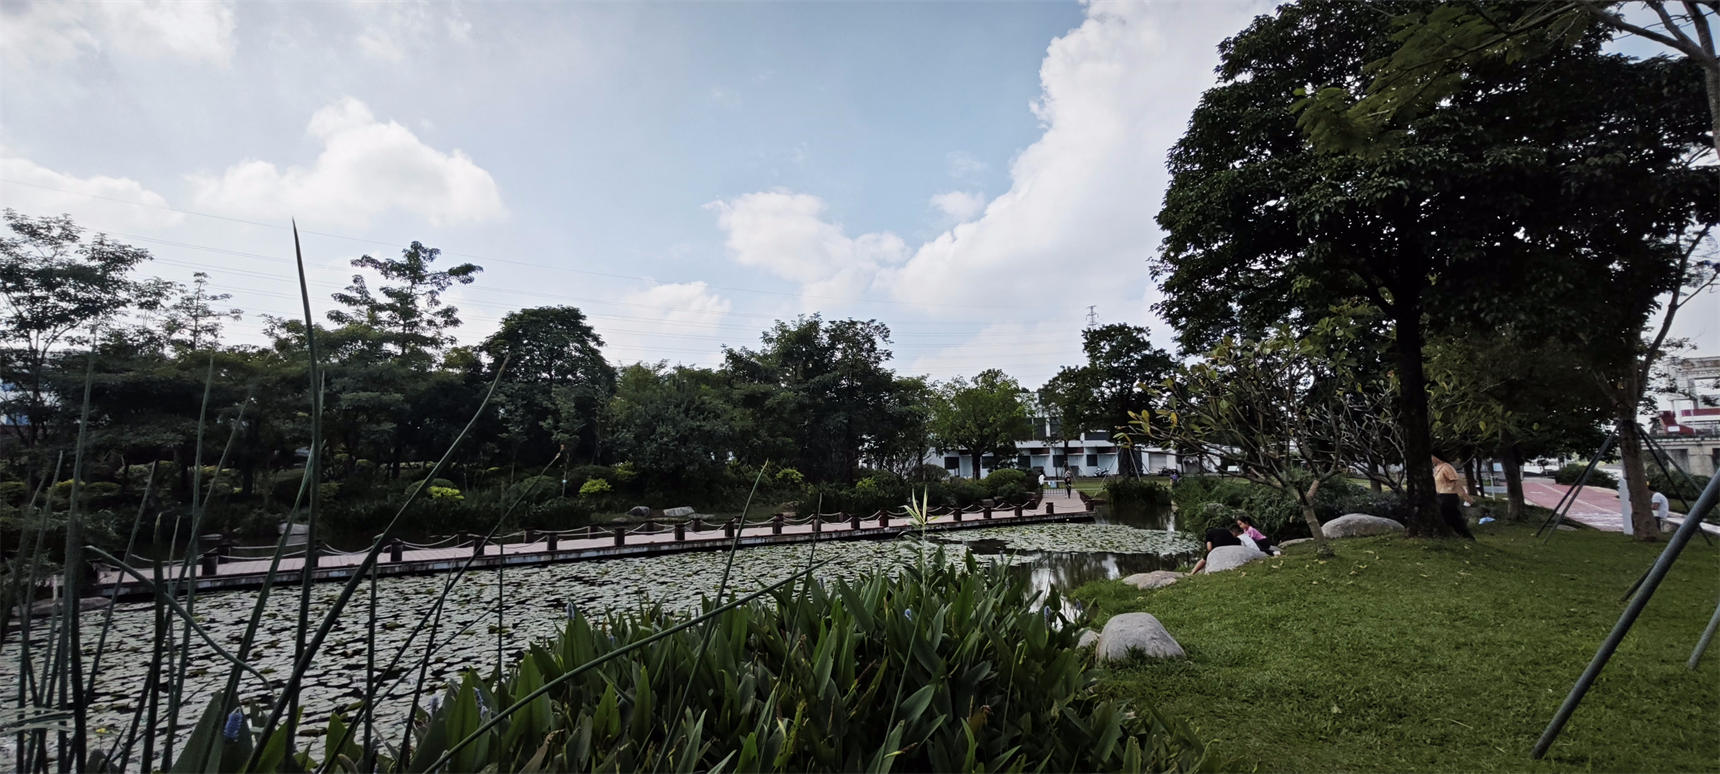 深圳市燕罗湿地公园